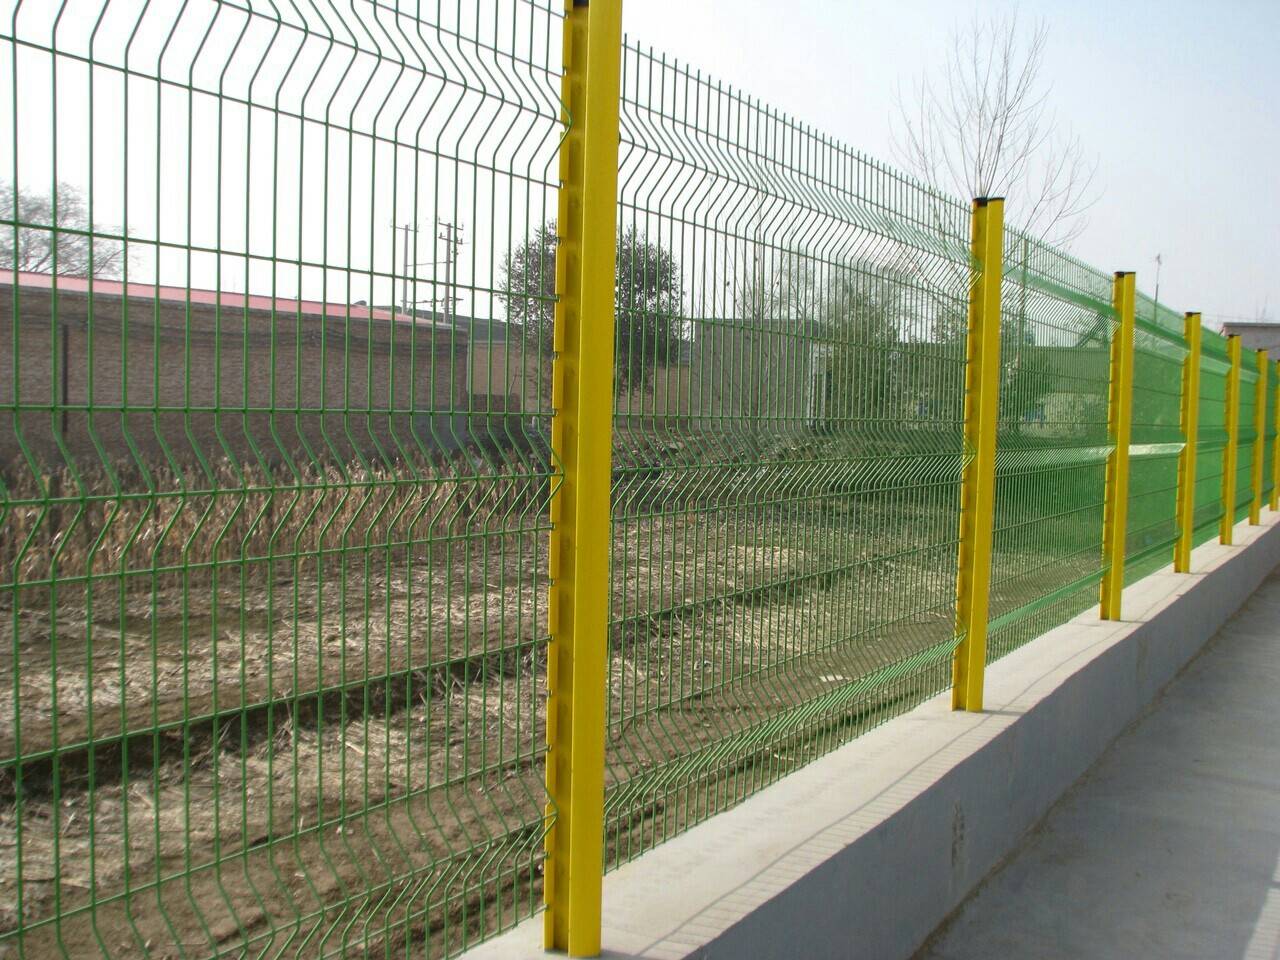 Tìm hiểu chung về hàng rào sắt | Lắp hàng rào khu công ngiệp Đông Nam – Là đơn vị nhiều năm kinh nghiệm trong ngành xây dựng và cơ khí, chúng tôi hiểu rằng hàng rào sắt